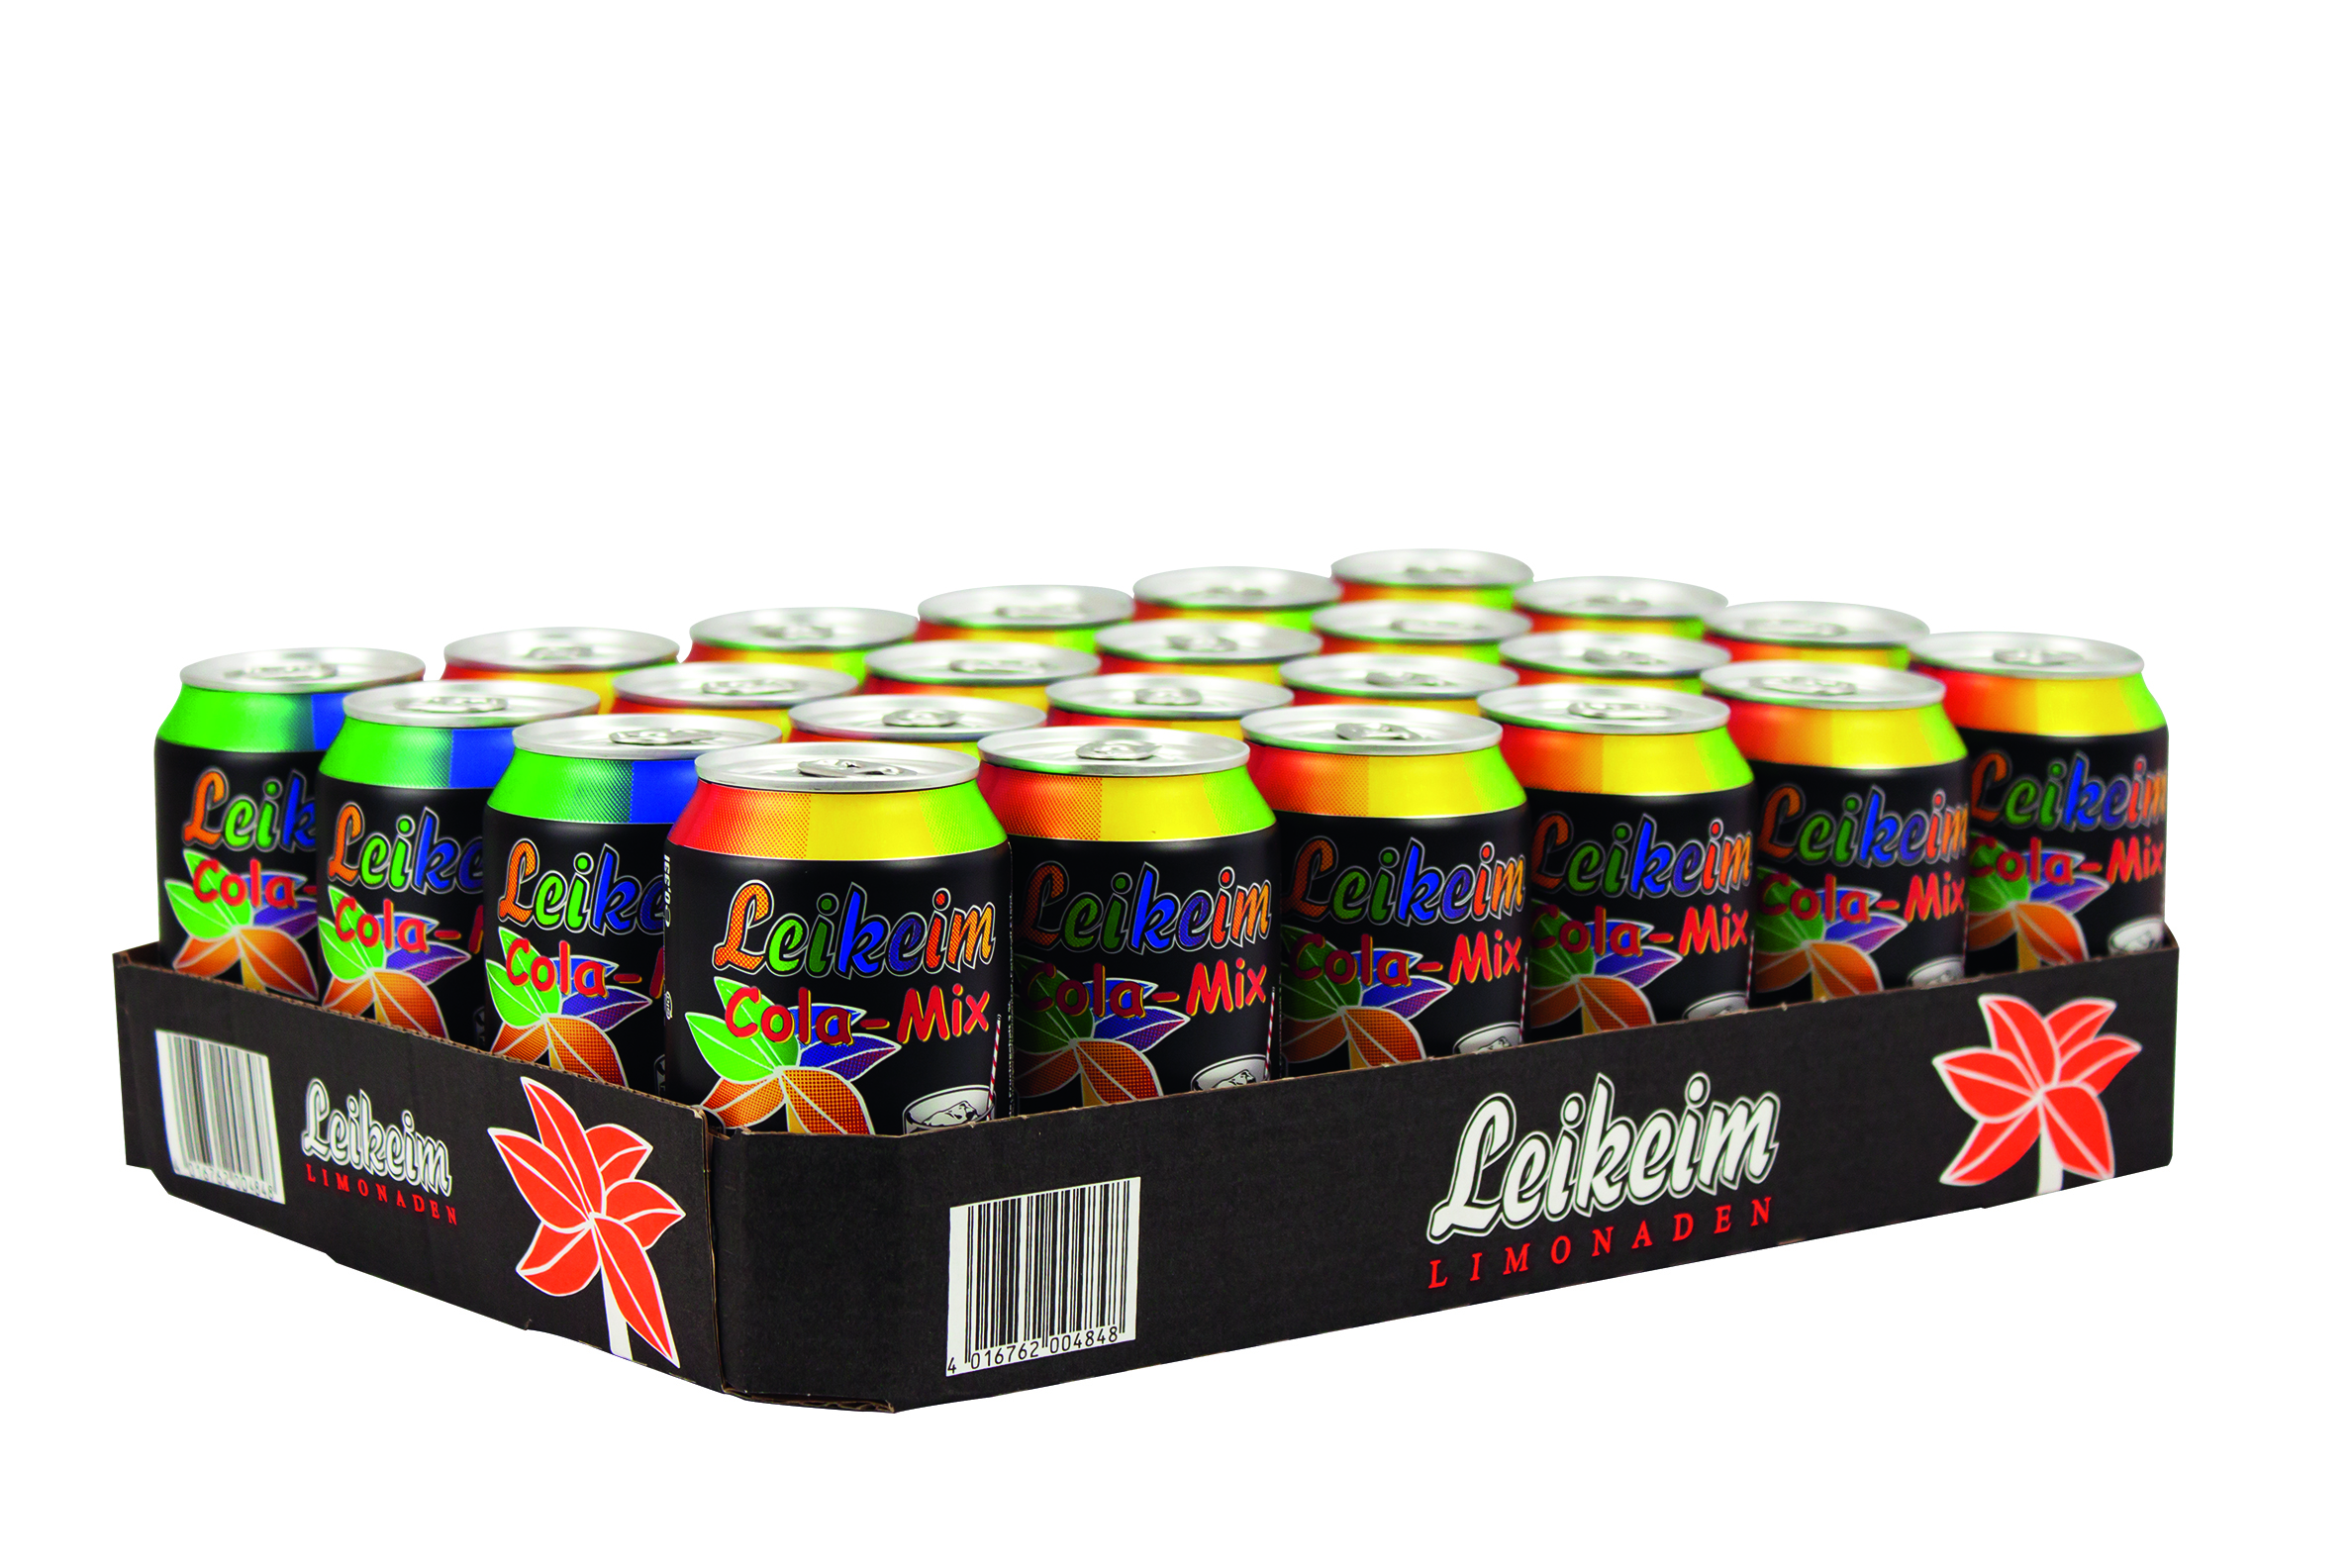 Leikeim Cola-Mix 24 x 0,33 Liter in der Dose